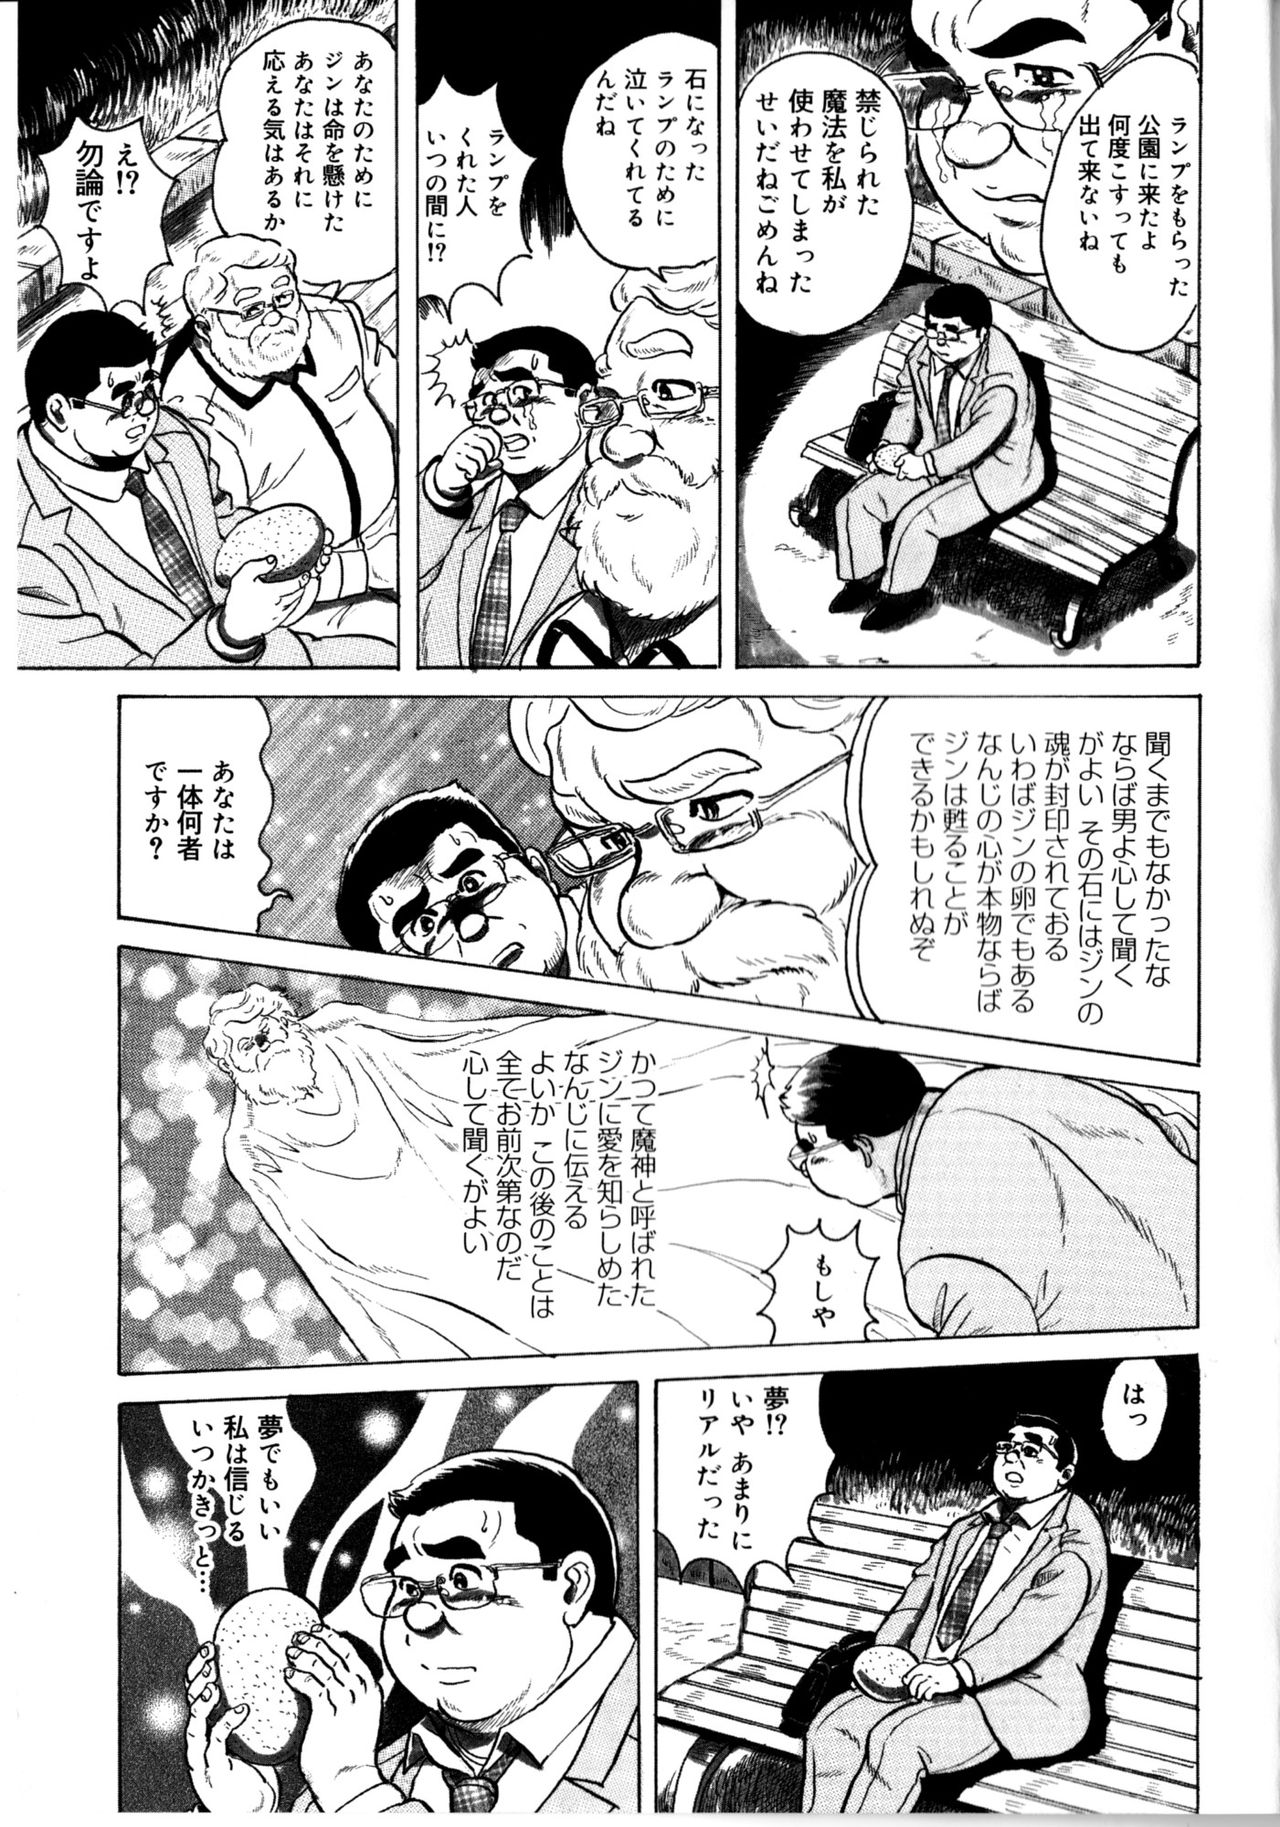 [藤岡健] 荒仁と魔法のランプ 後編 (SAMSON No.363 2012年10月)